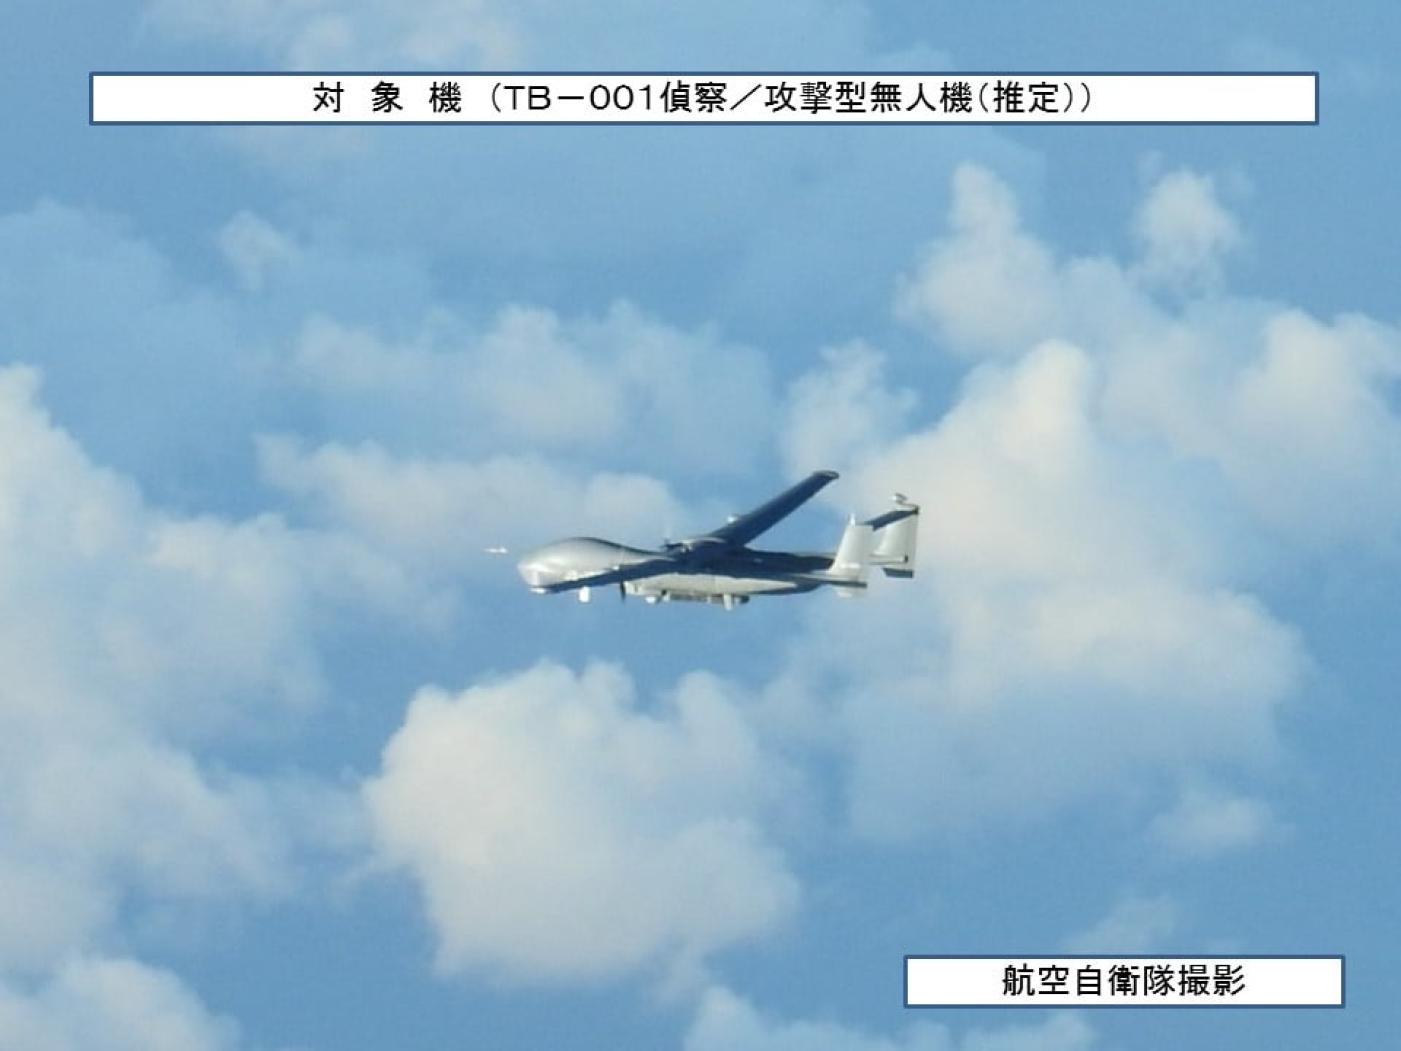 解放軍派出具偵察／攻擊的TB-001無人機完成首度圍台航訓。翻攝日本統合幕僚監部網站